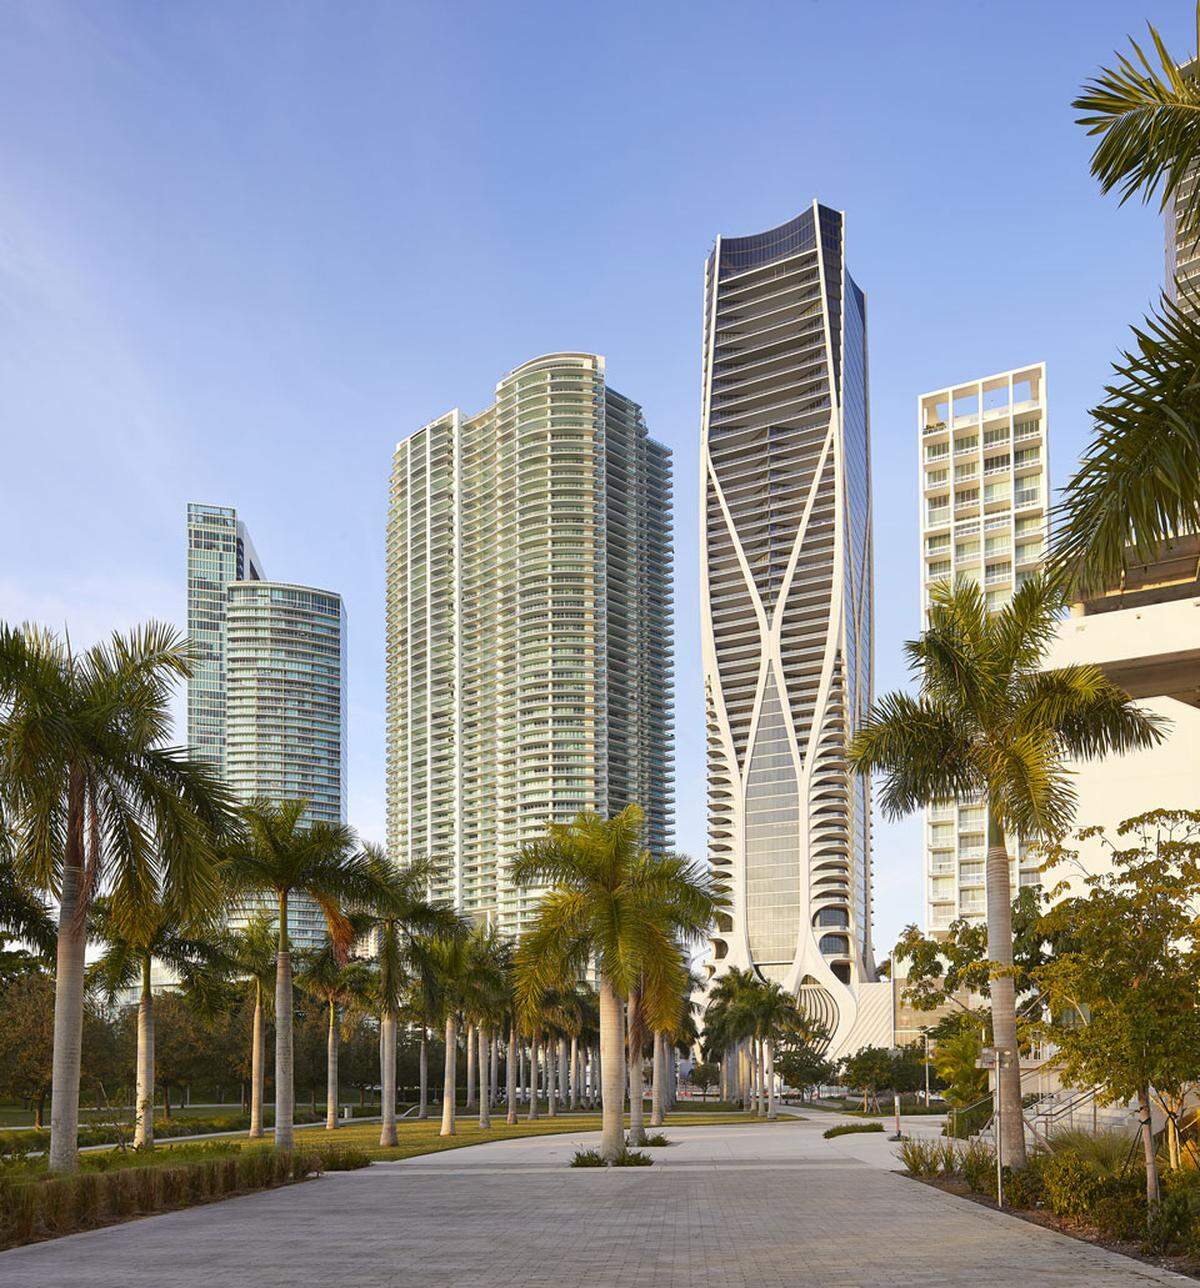 Der 62-stöckige Luxus-Wohnturm wurde von Zaha Hadid und Chris Lepine entworfen.